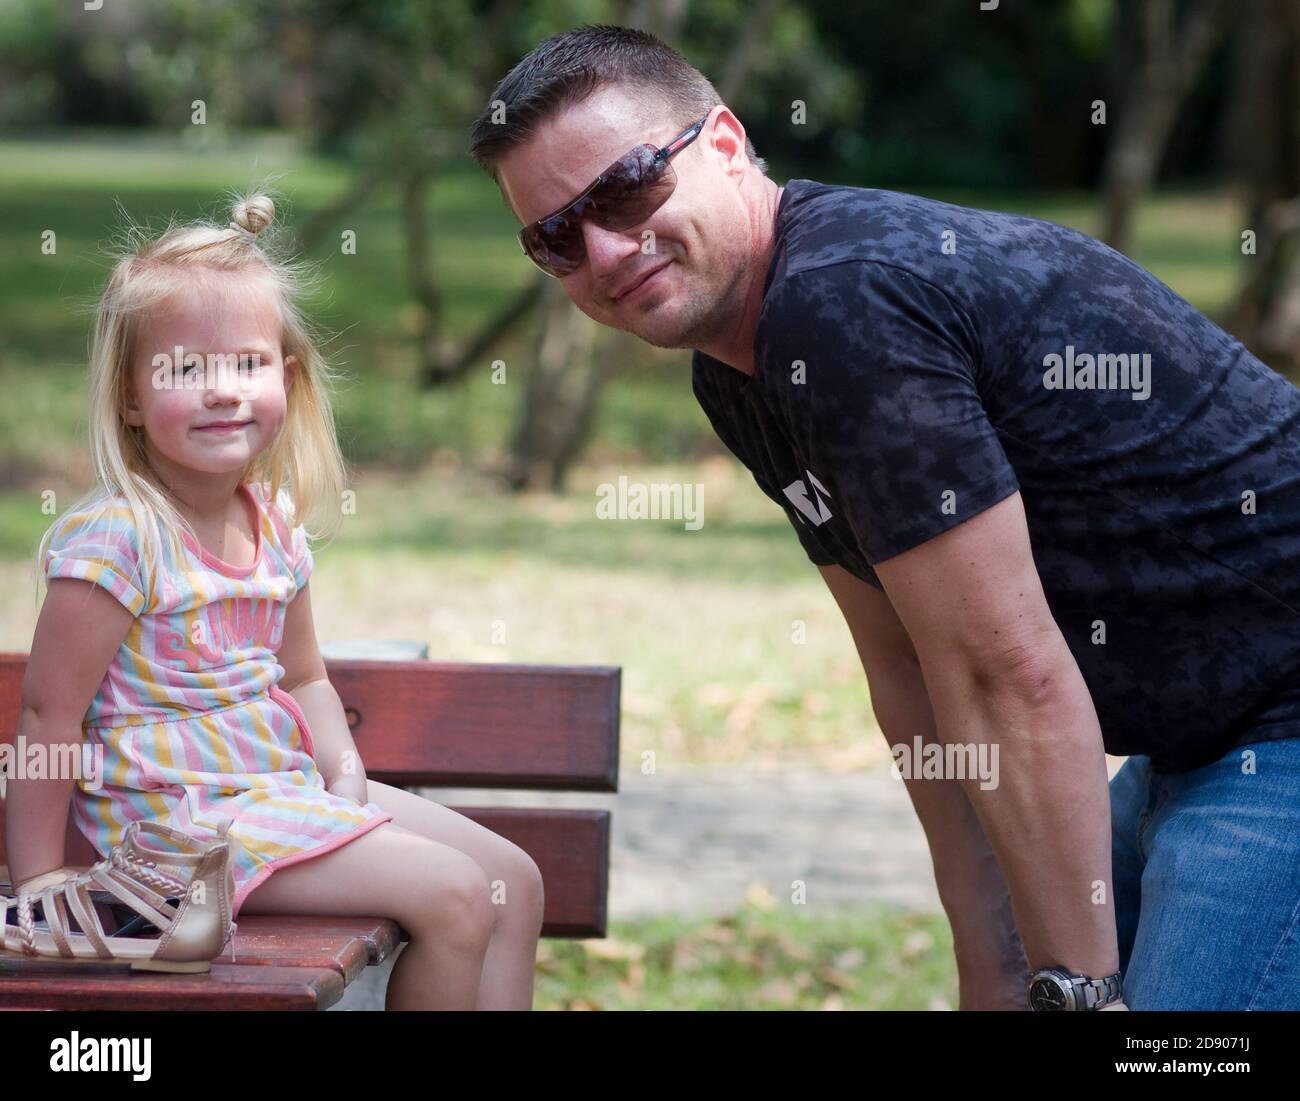 Auf einem Ausflug in den Park sitzt eine Tochter auf einem Tisch und lächelt an der Kamera, während ihr Vater auf ihre Ebene hockt Stockfoto